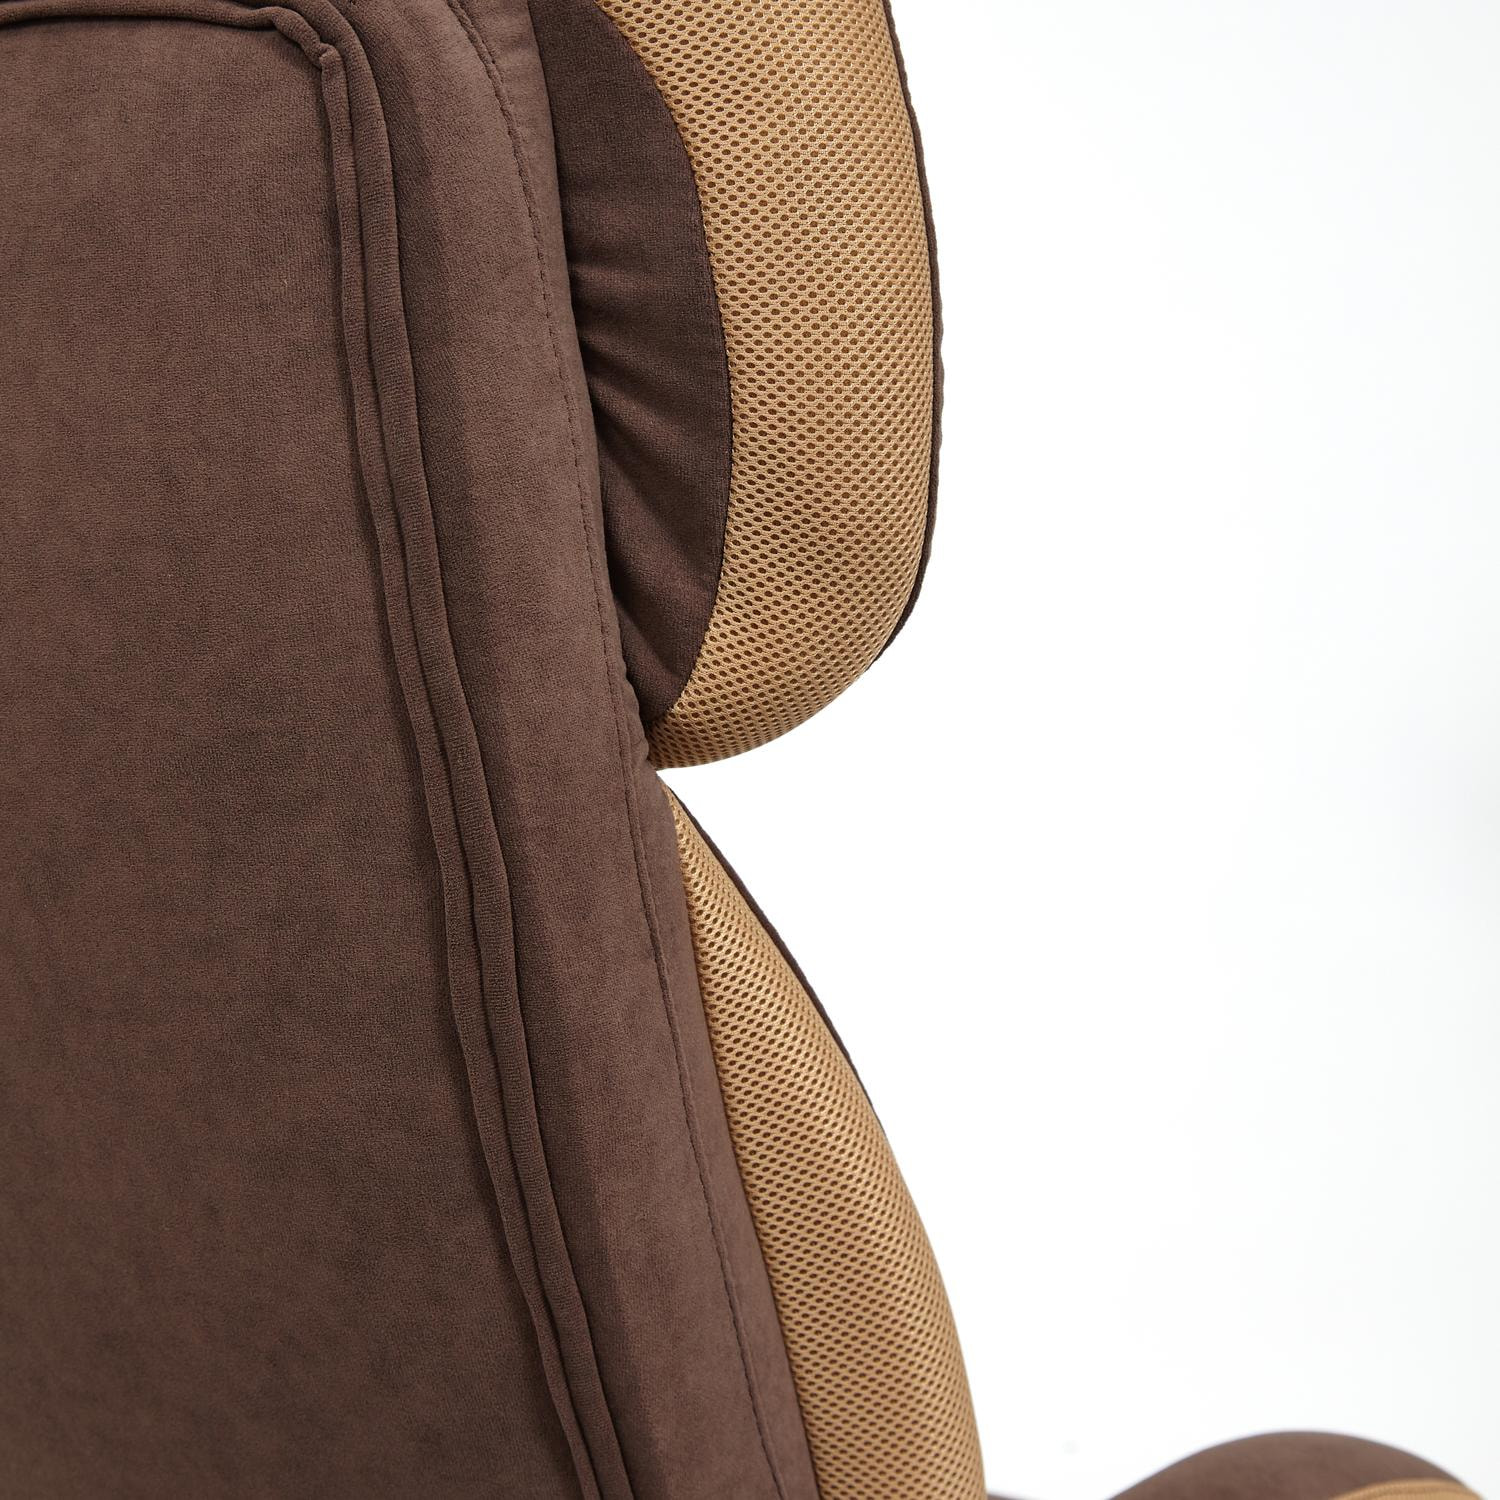 Кресло DUKE флок/ткань, коричневый/бронза, 6/TW-21